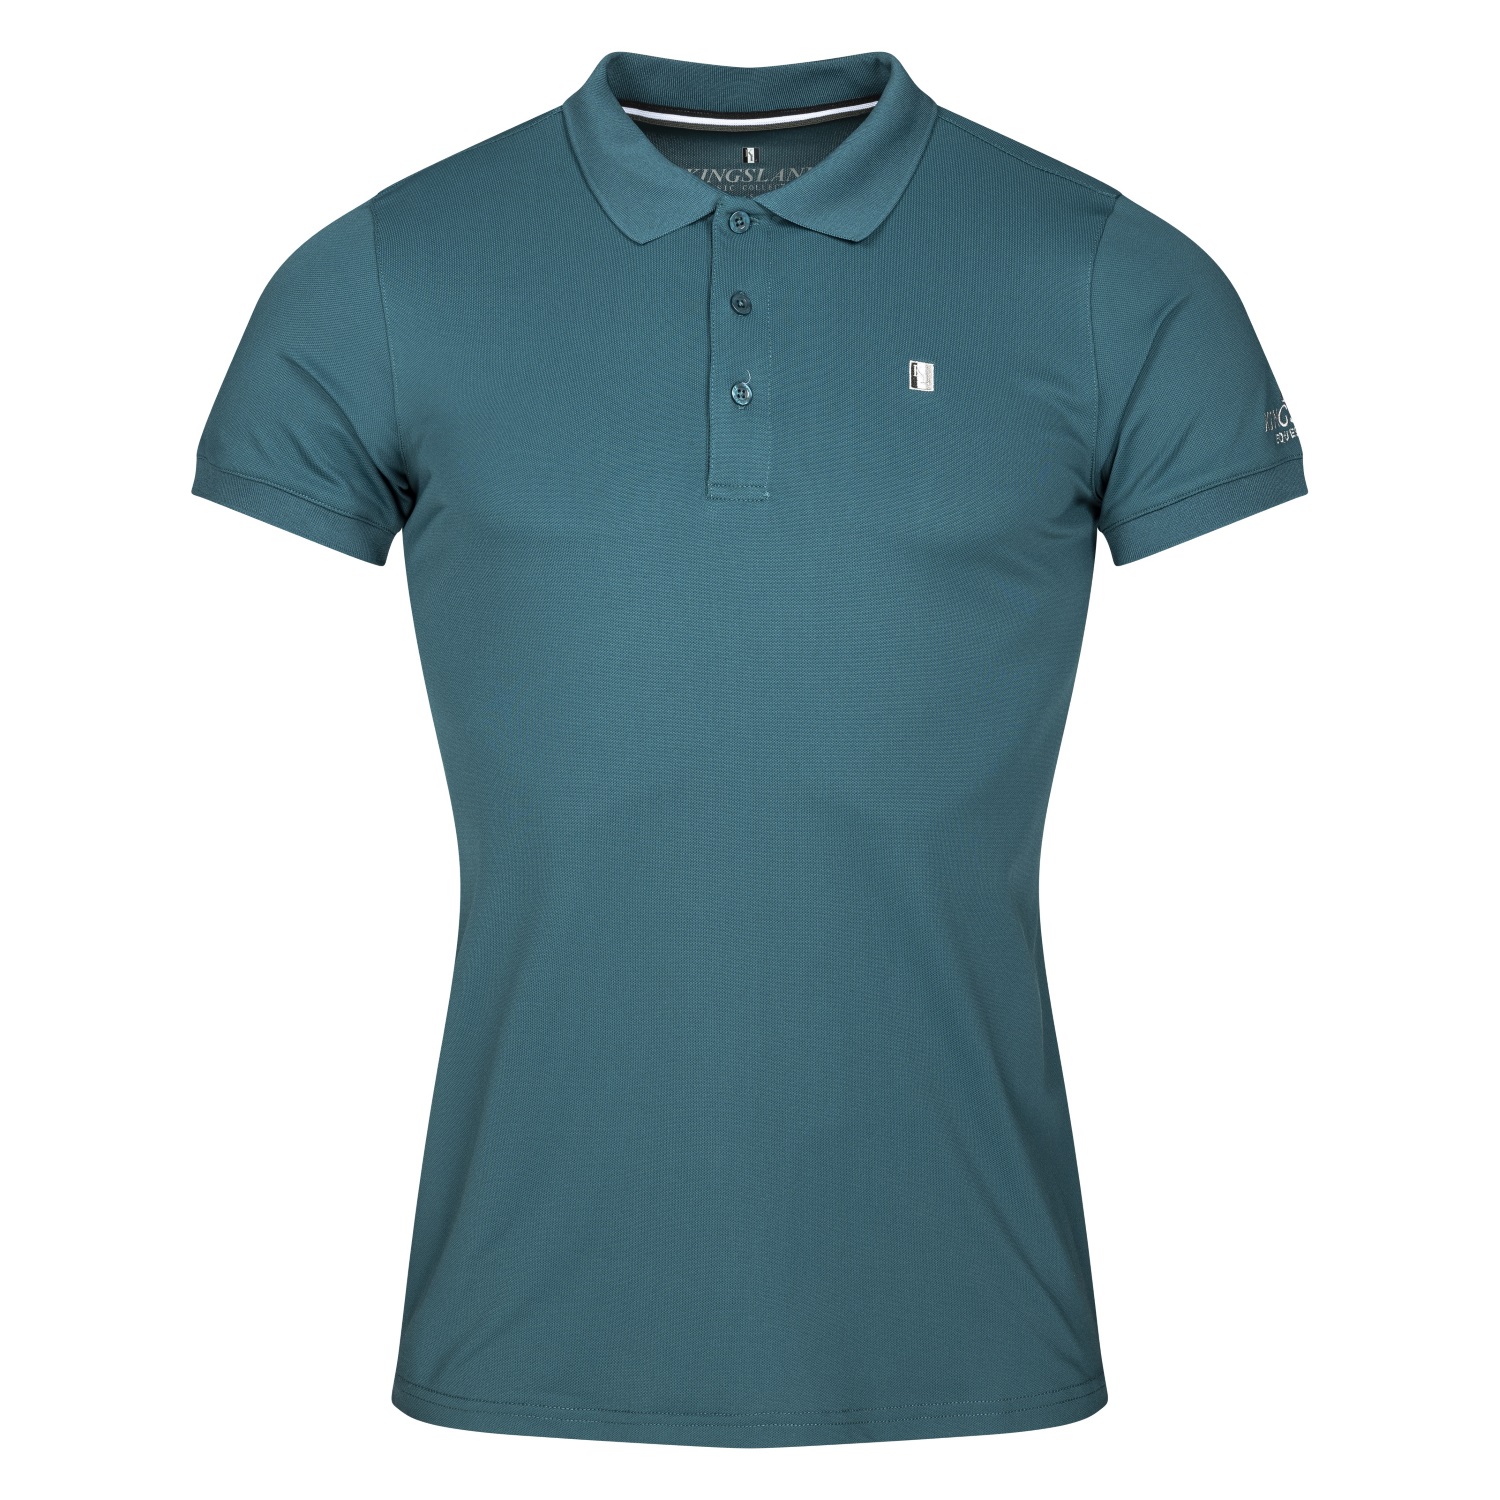 KINGSLAND Classic Limited Herren Pique Polo Shirt - green deep - XL - 1